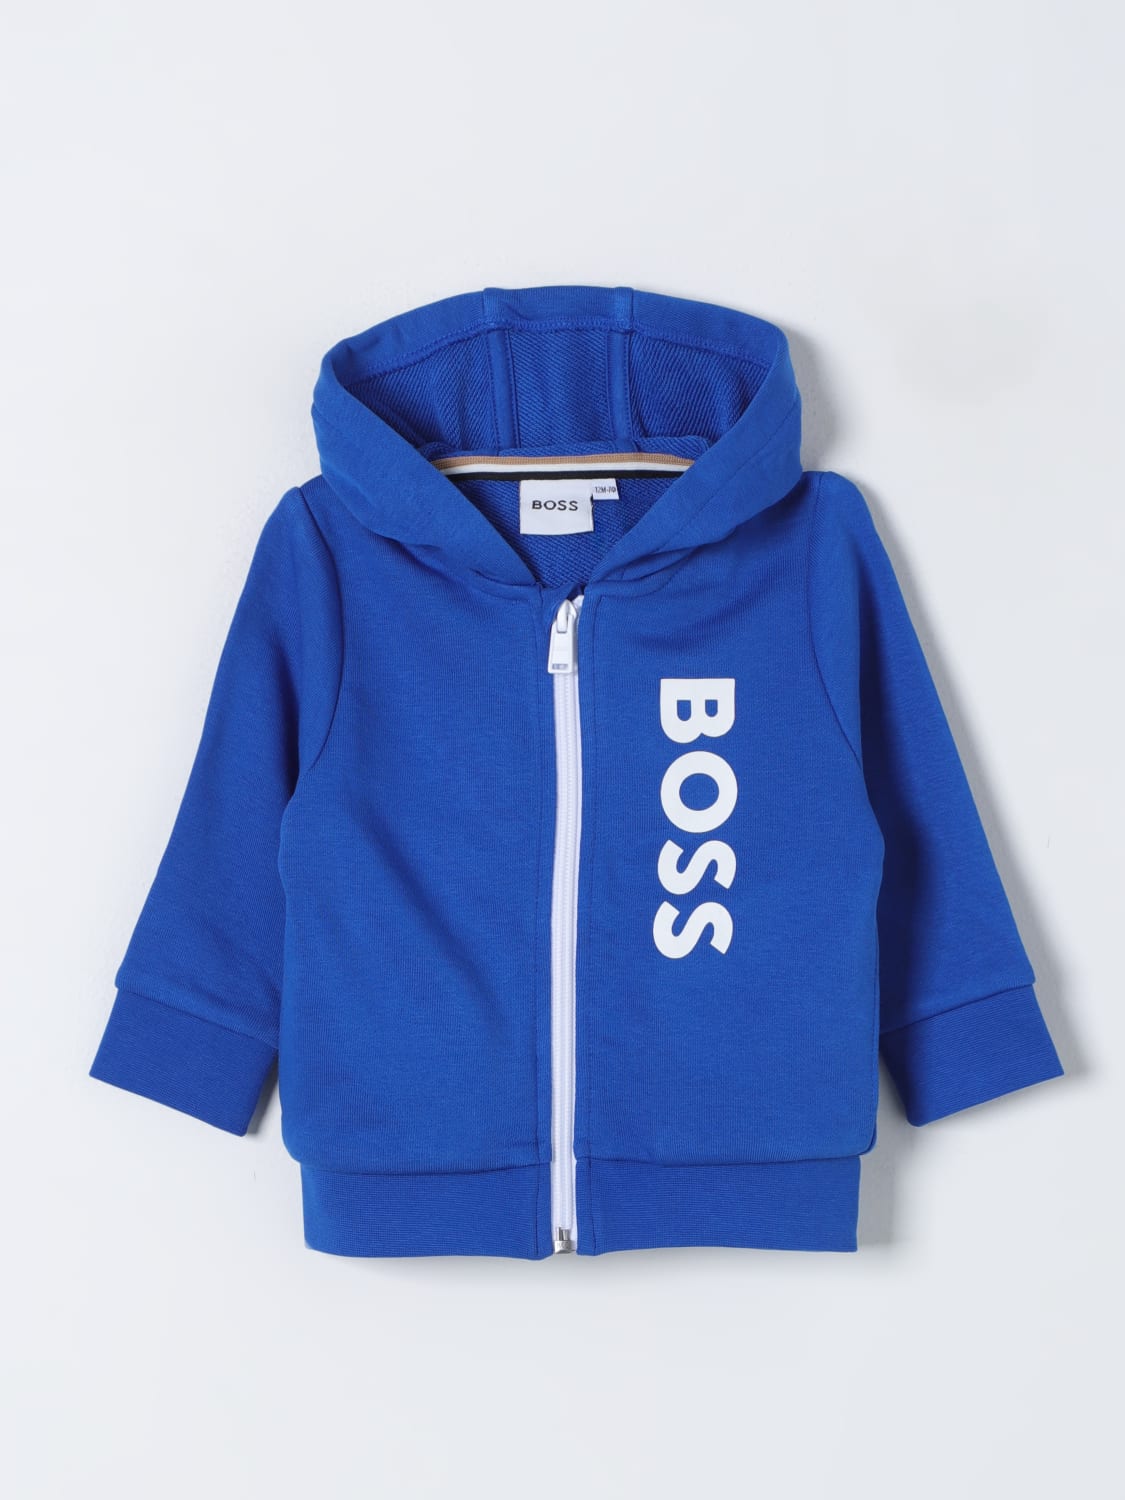 BOSS Kidswear J05973849 - Blue